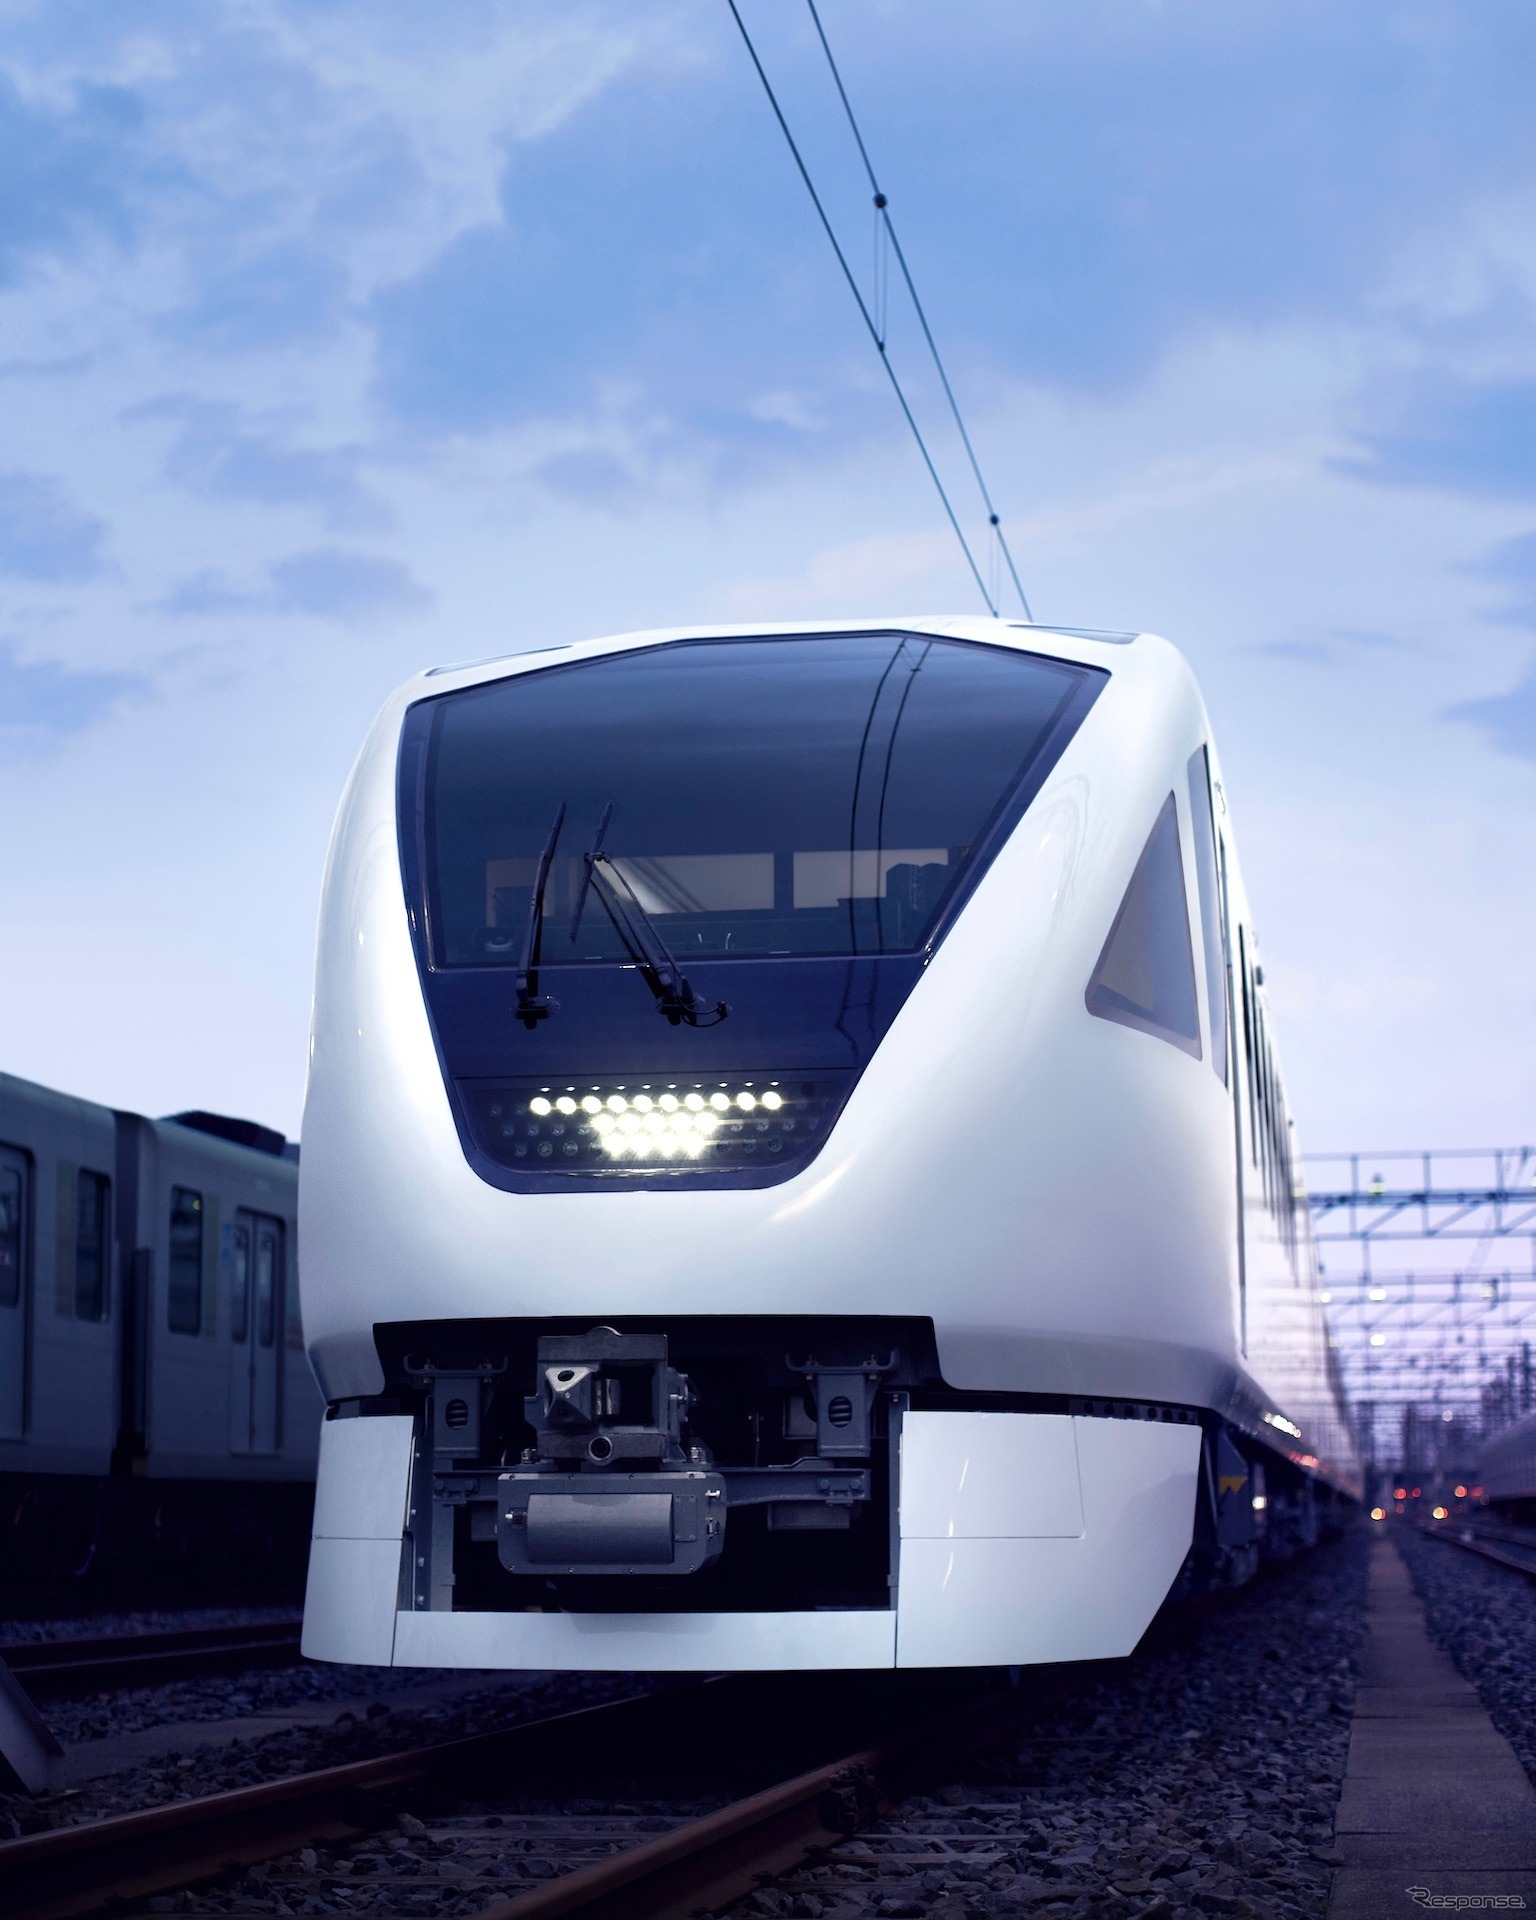 東武鉄道 N100系 特急形電車「スペーシアX」